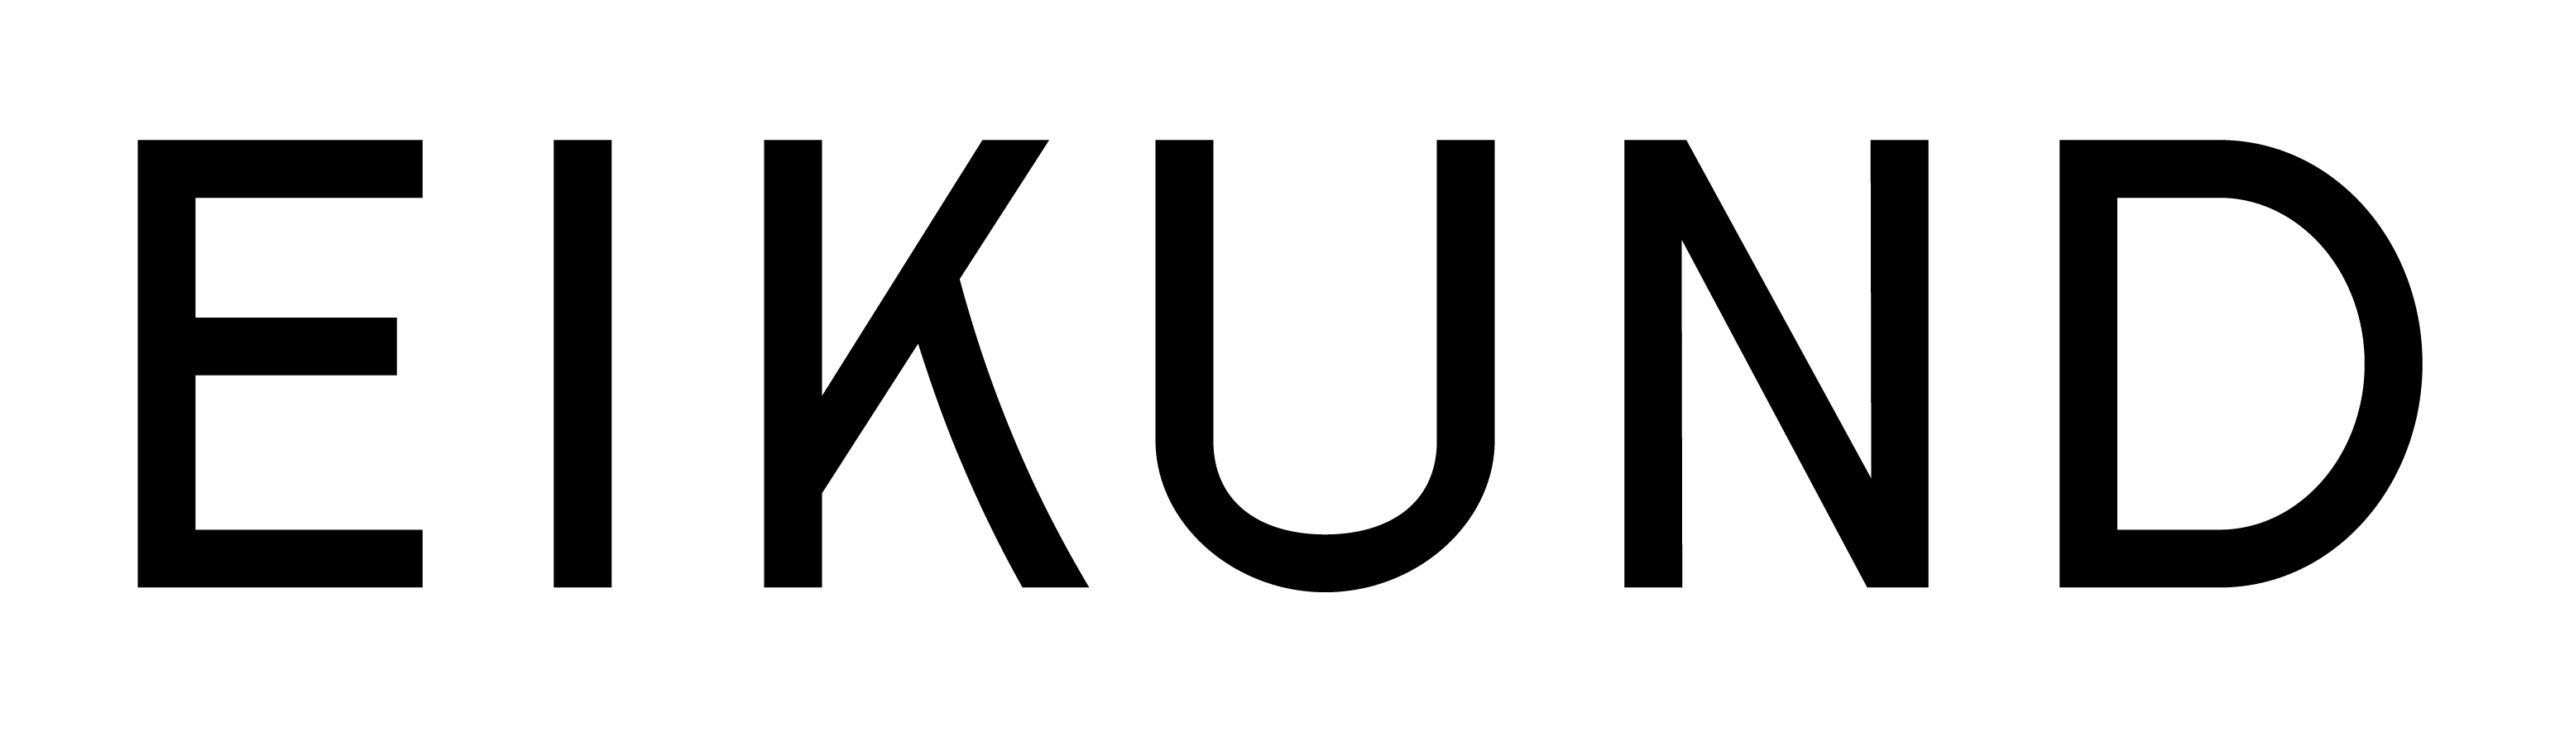 Eikund logo svart